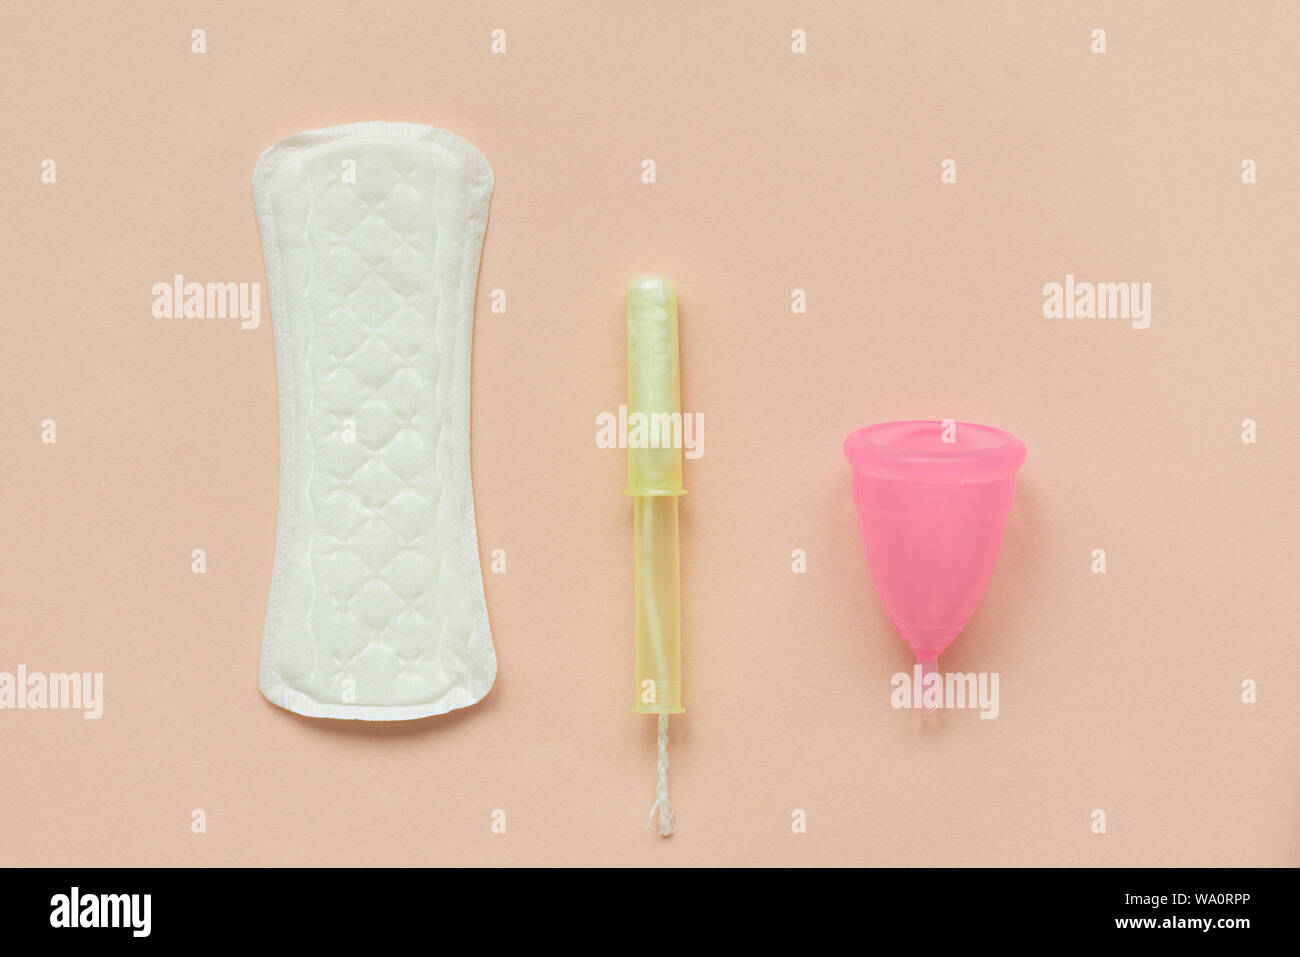 Serviettes hygiéniques ou tampons, tampon et coupelle menstruelle sur fond  rose. Concept d'hygiène intime féminine. Vue d'en haut. Copier l'espace  Photo Stock - Alamy